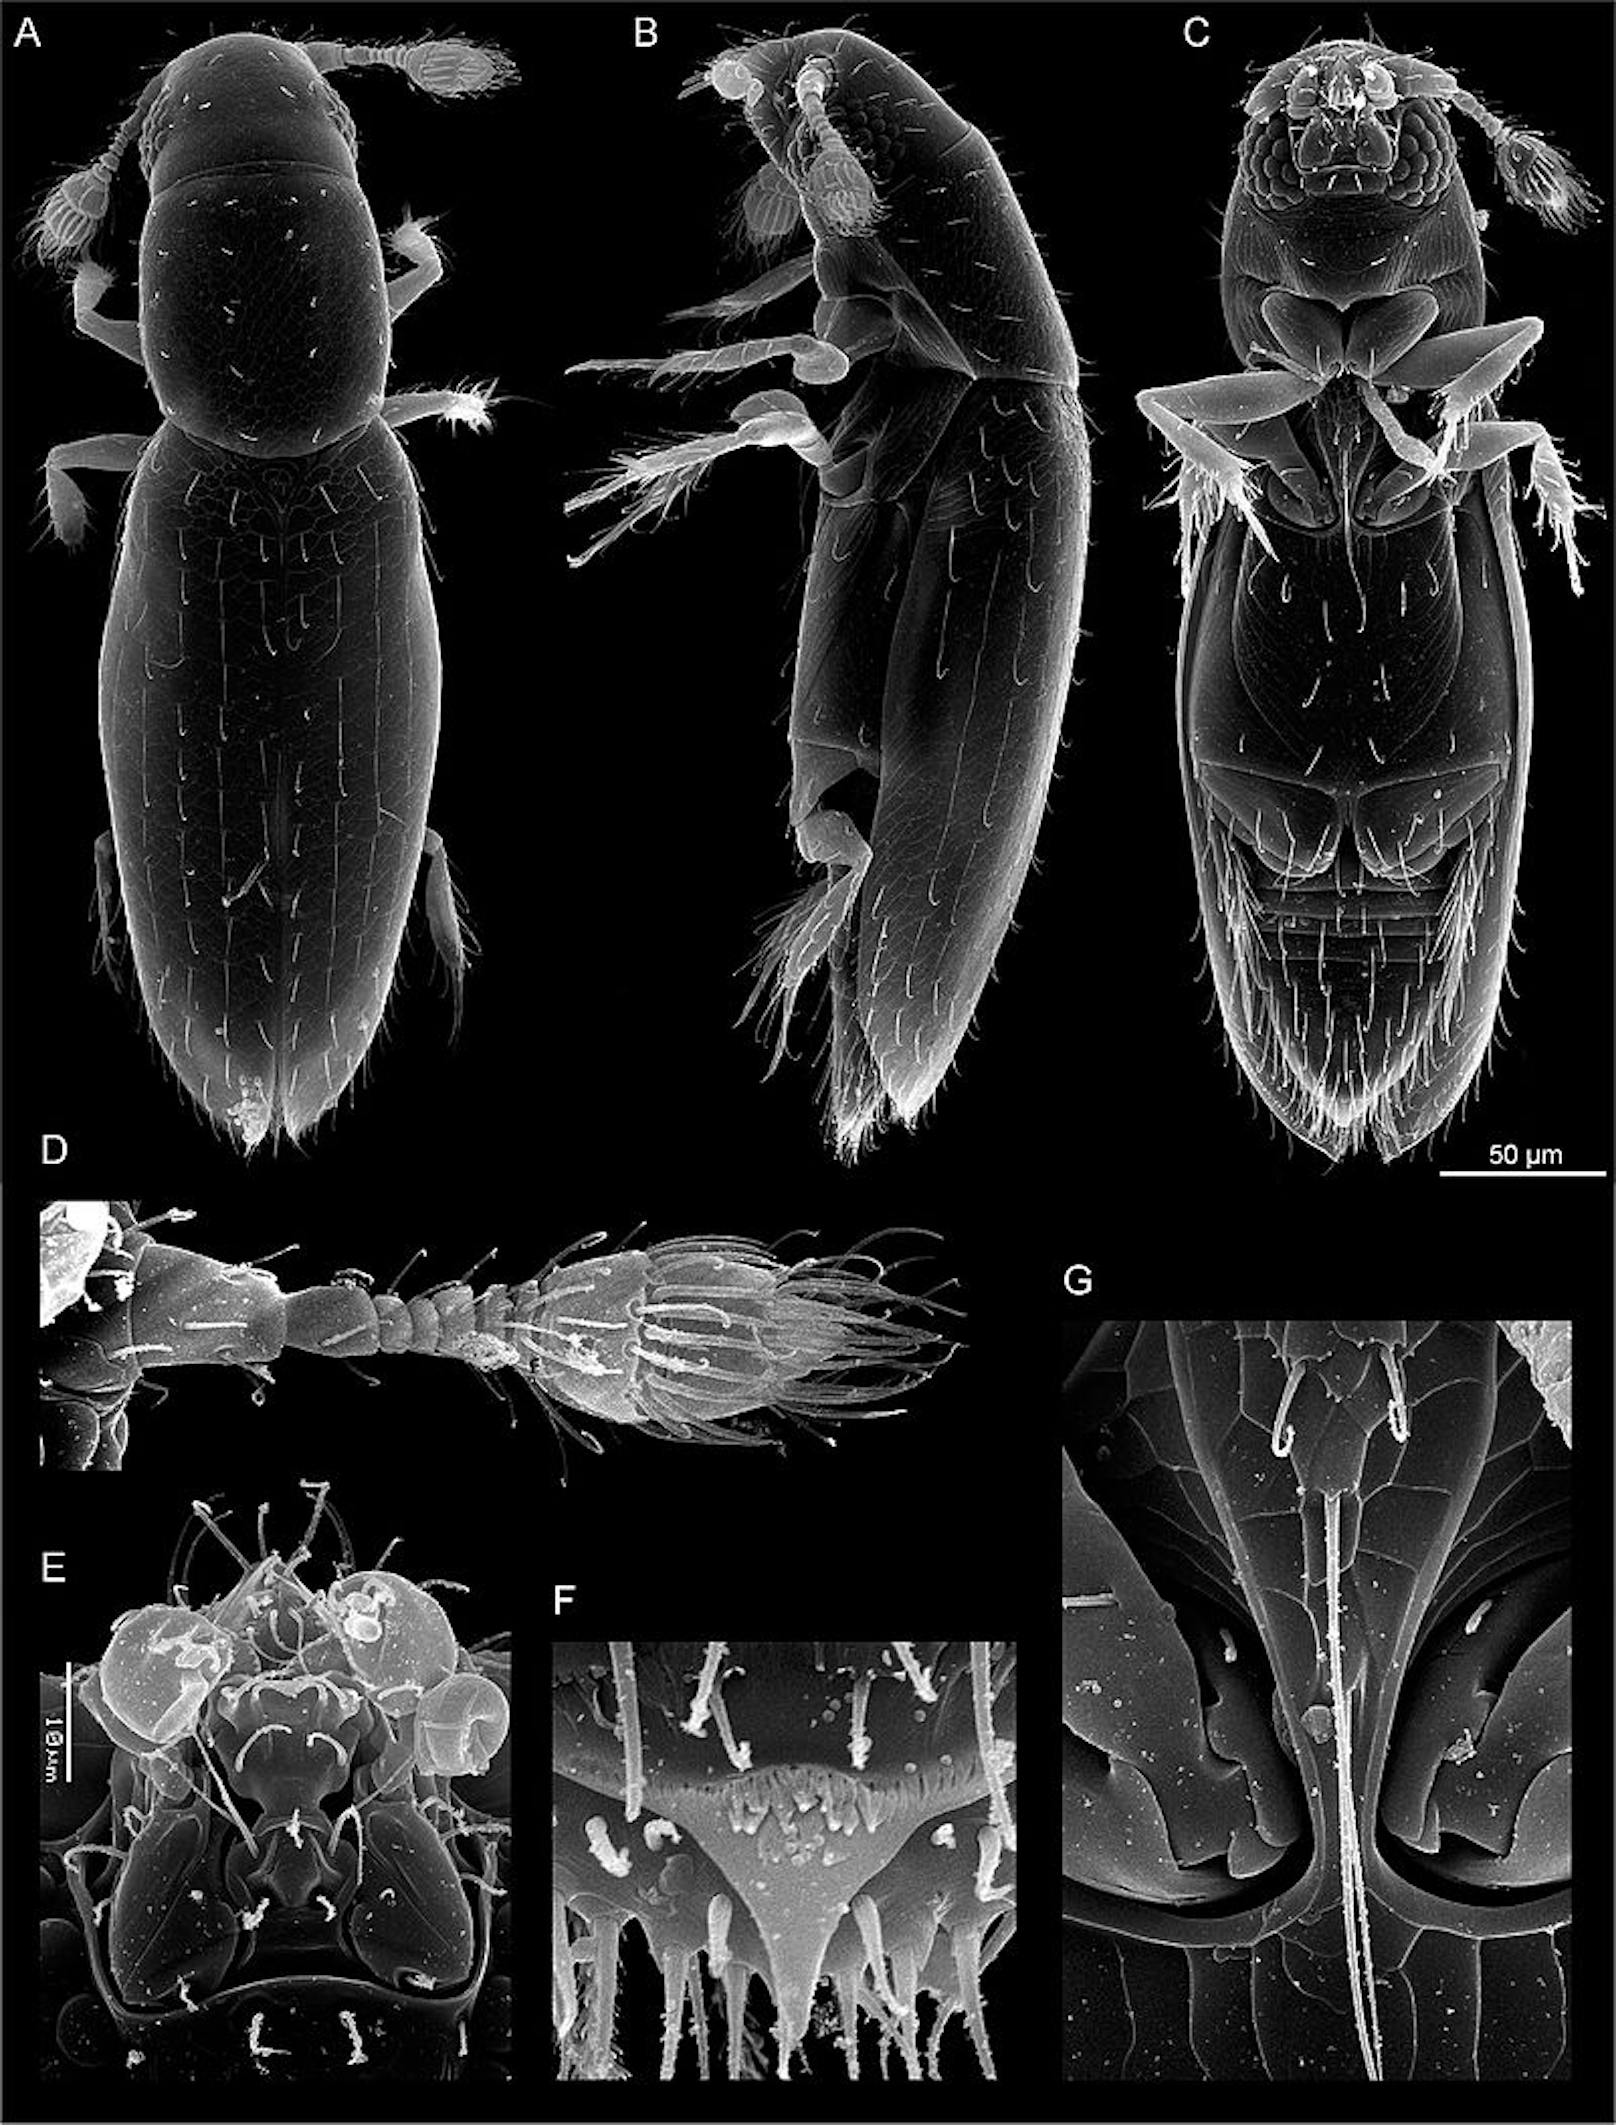 Den kleinsten Käfer der Welt kann man mit freiem Auge kaum erkennen. Es ist der&nbsp;Scydosella musawasensis und er misst gerade einmal 0,325 Milimeter. Damit ist er das kleinste lebensfähige Insekt überhaupt.